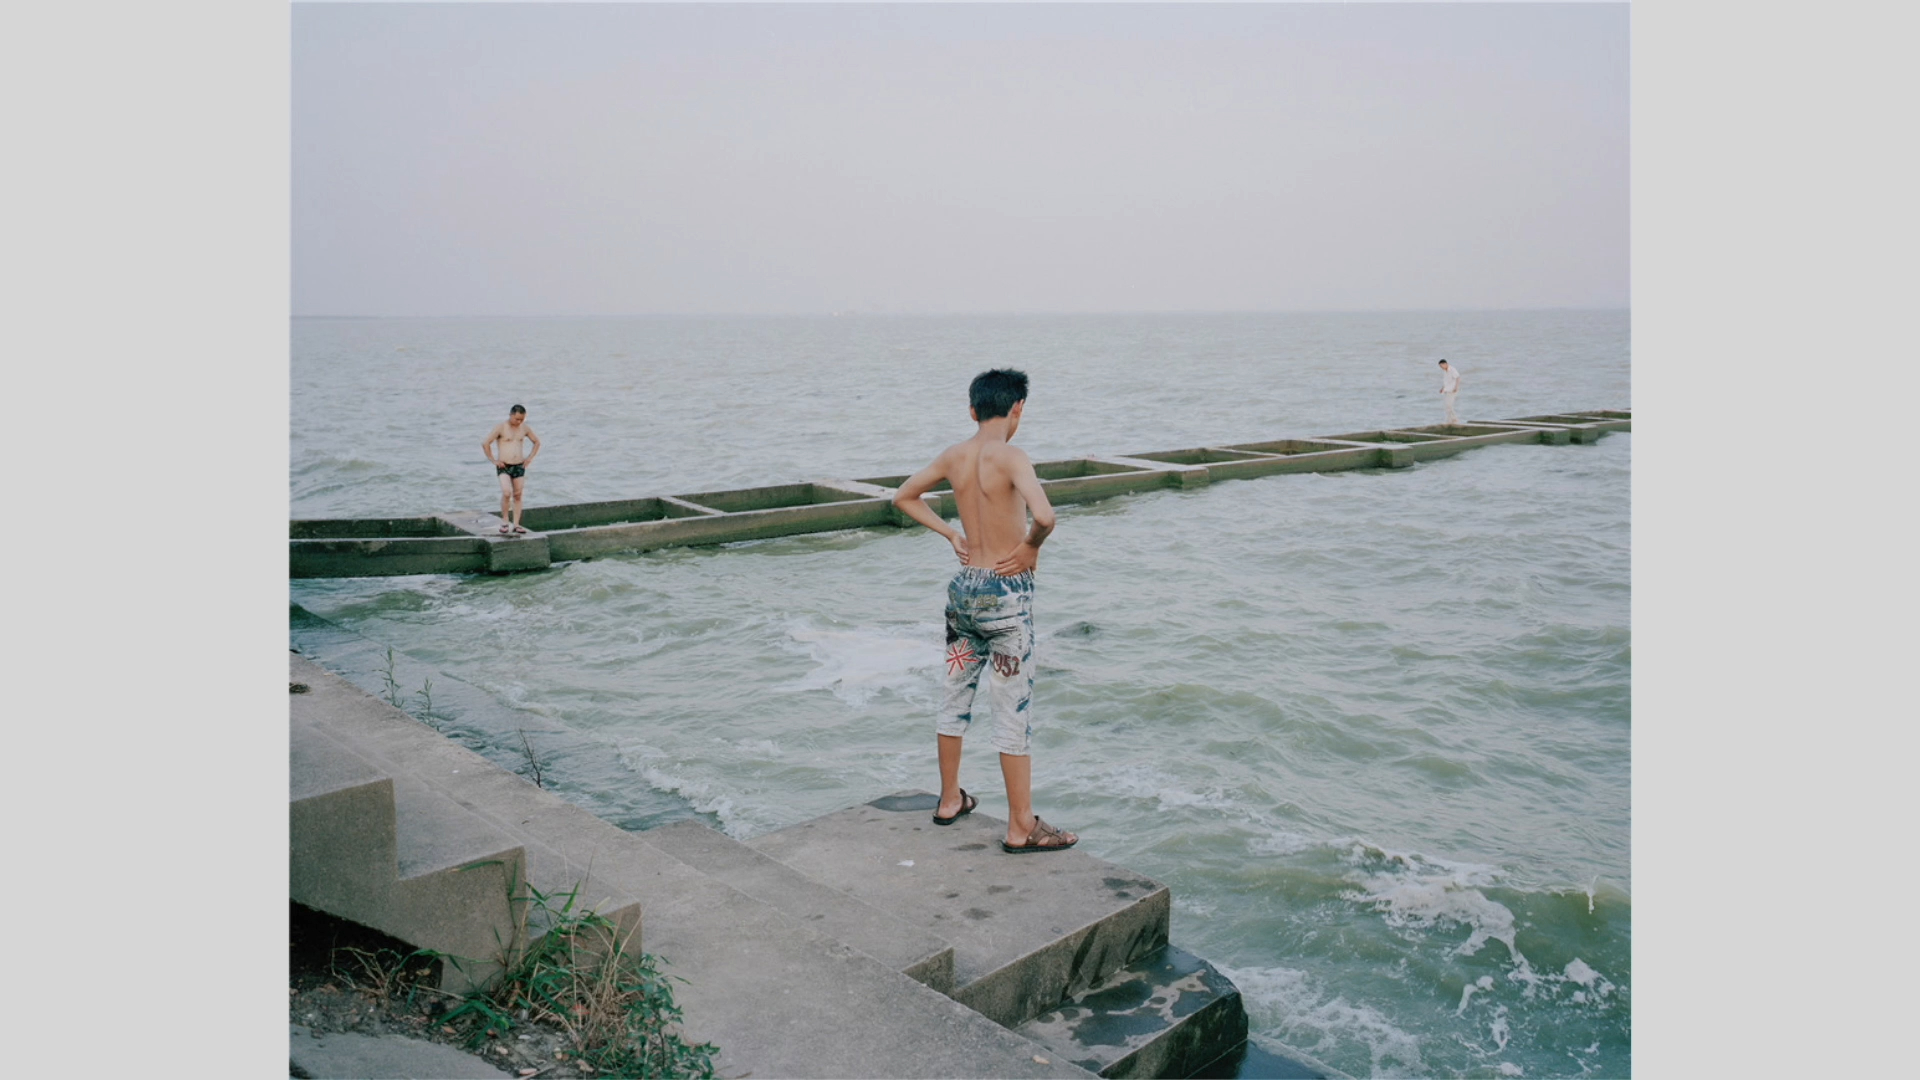 【提升审美】陈亮《在水一方》2015年第五届侯登科纪实摄影奖提名作品